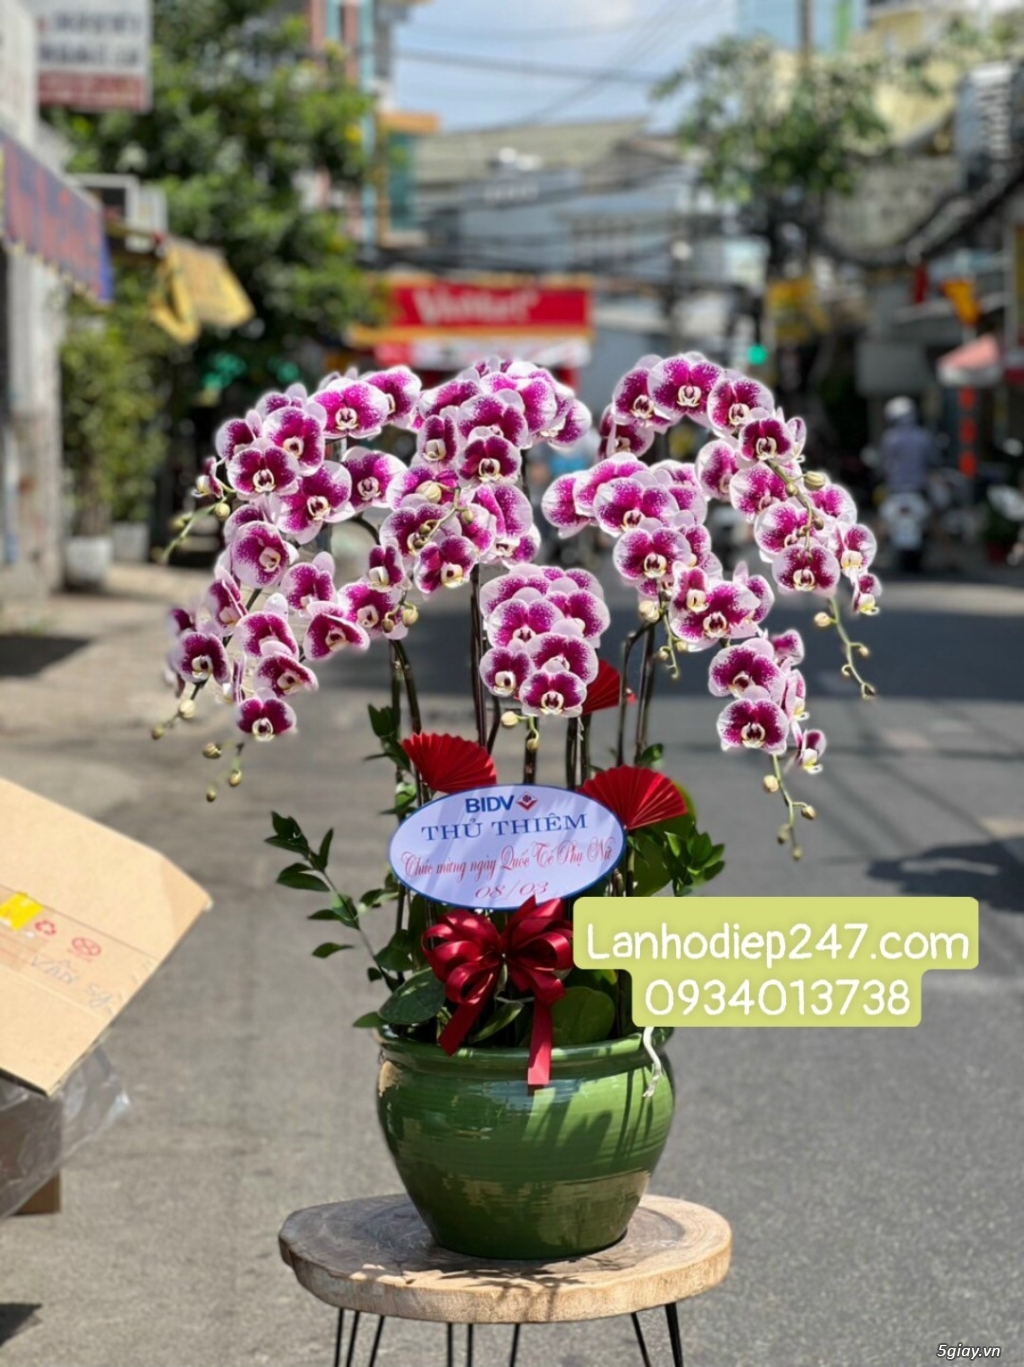 Shop hoa tươi Lan Hồ Điệp 247 tại Quy Nhơn 0934013738 - 14